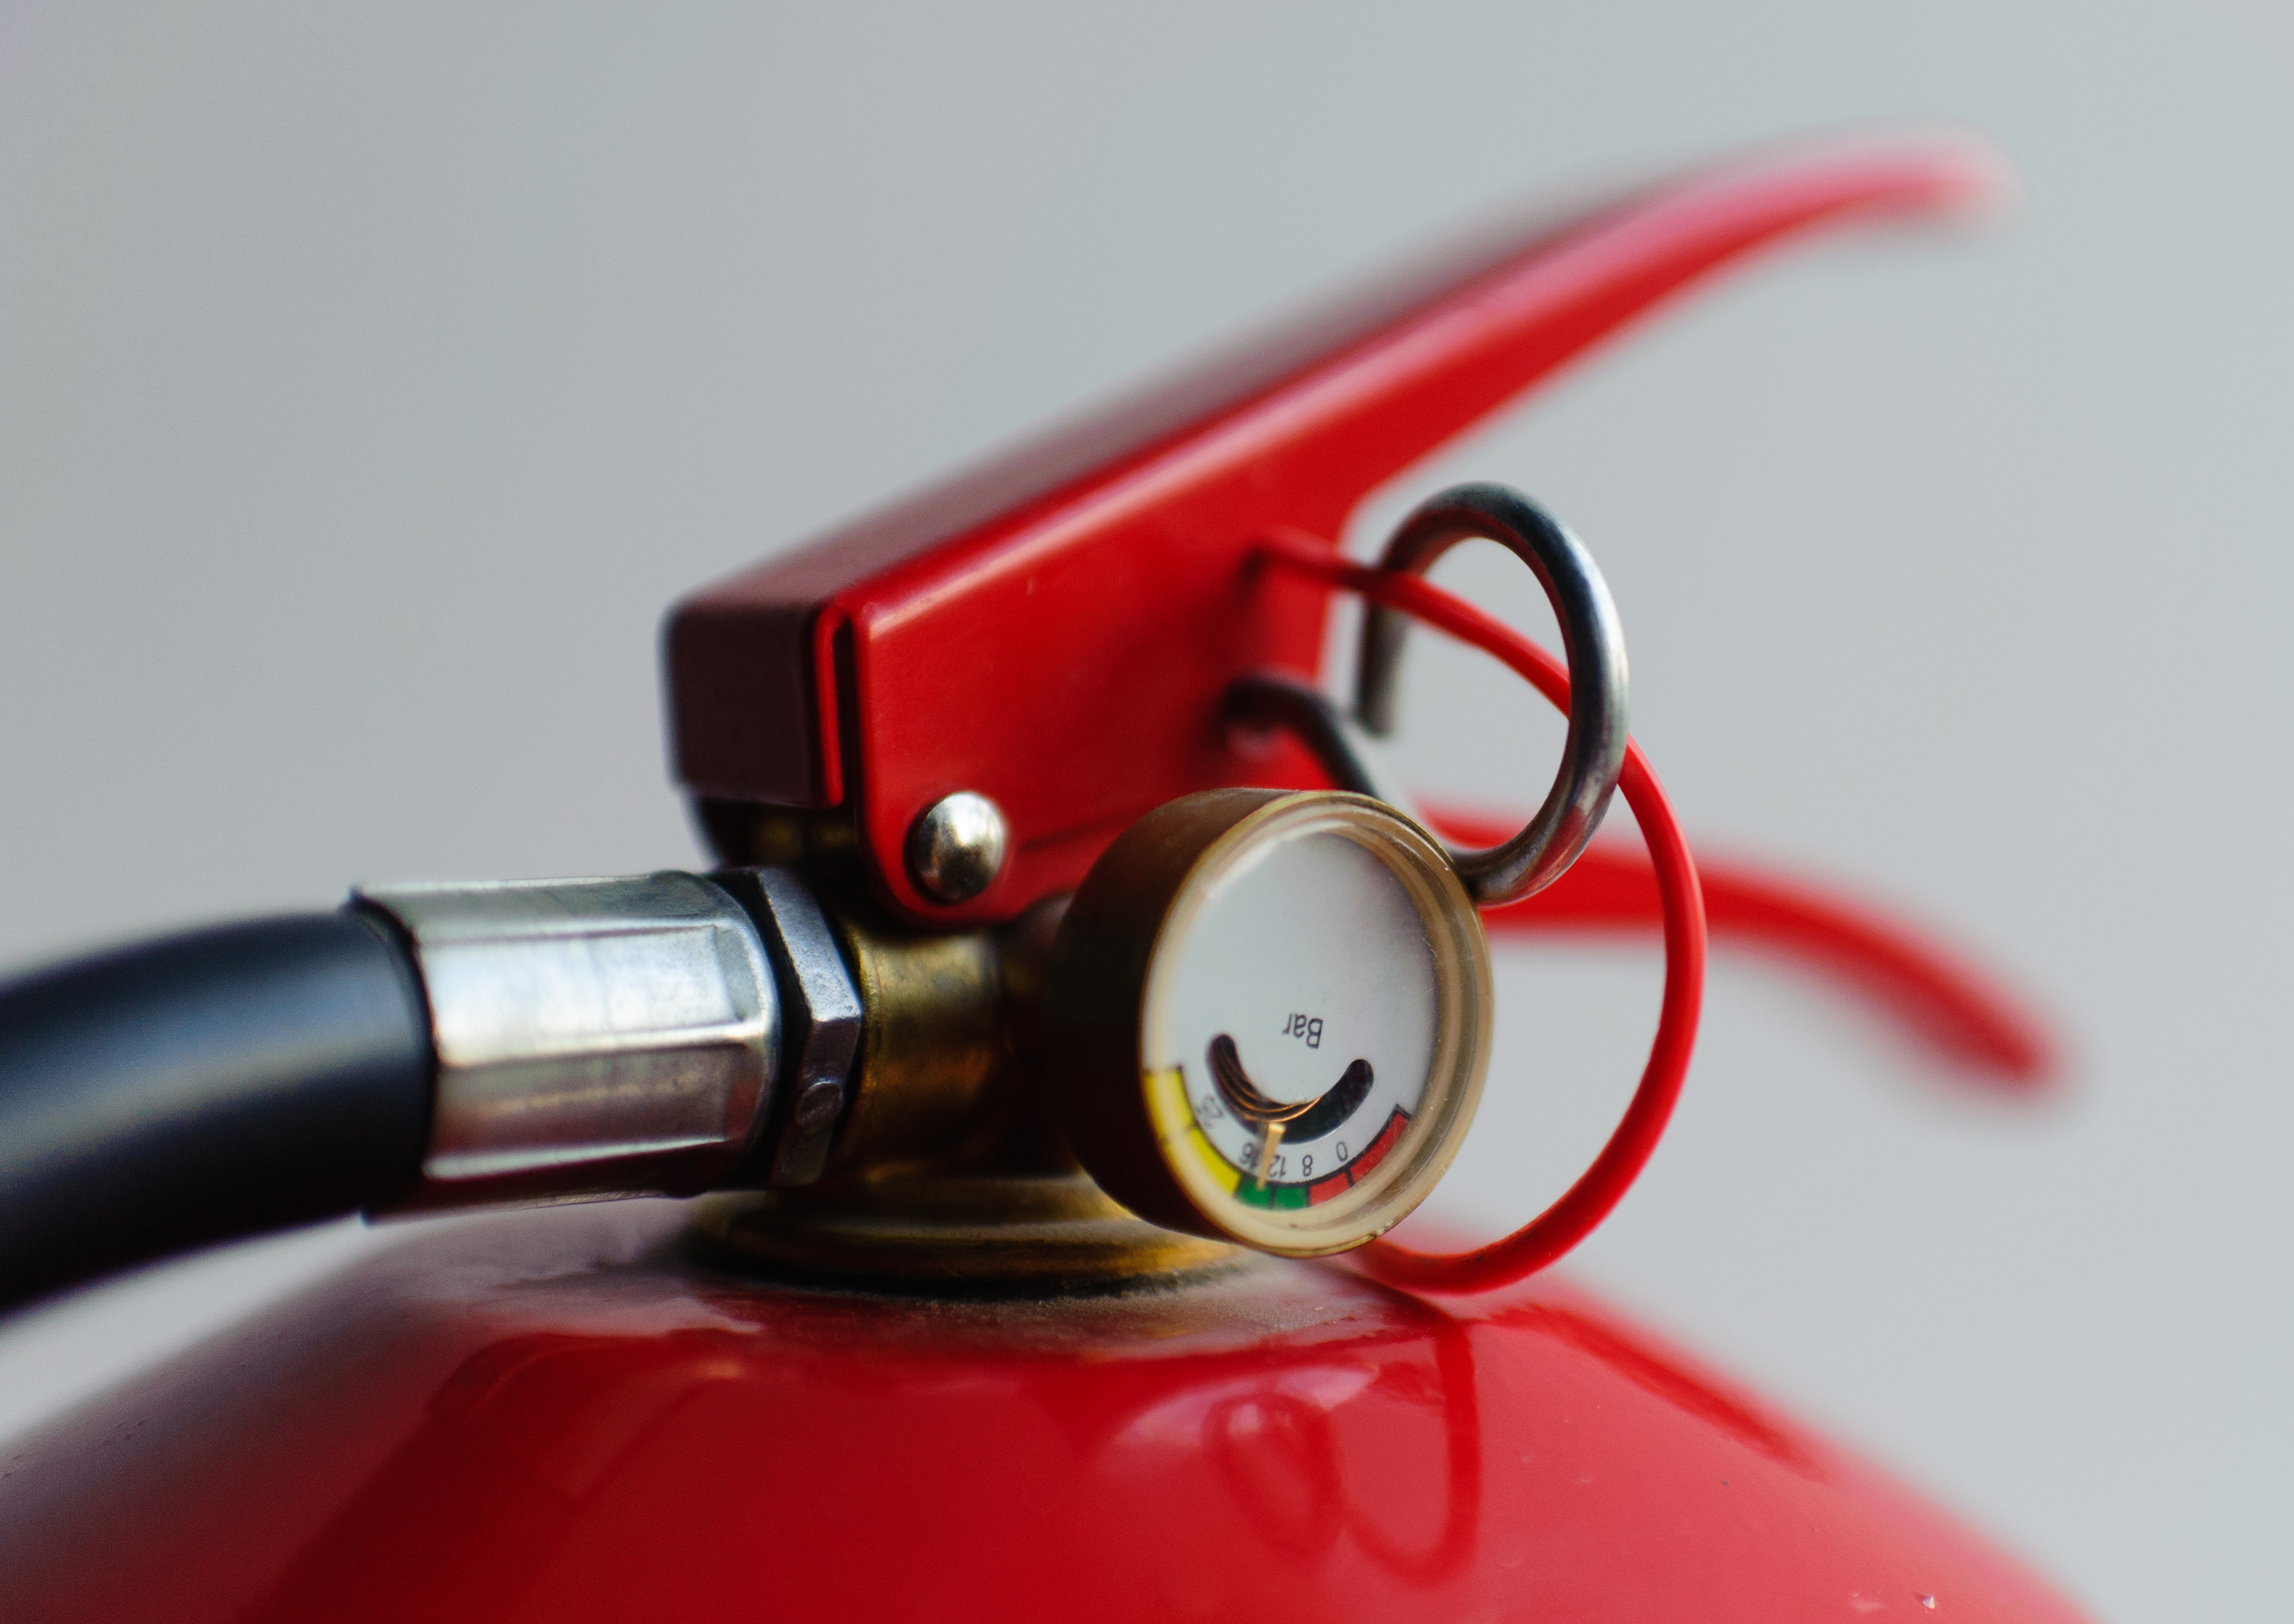 Fire Extinguisher Basics — OMAG